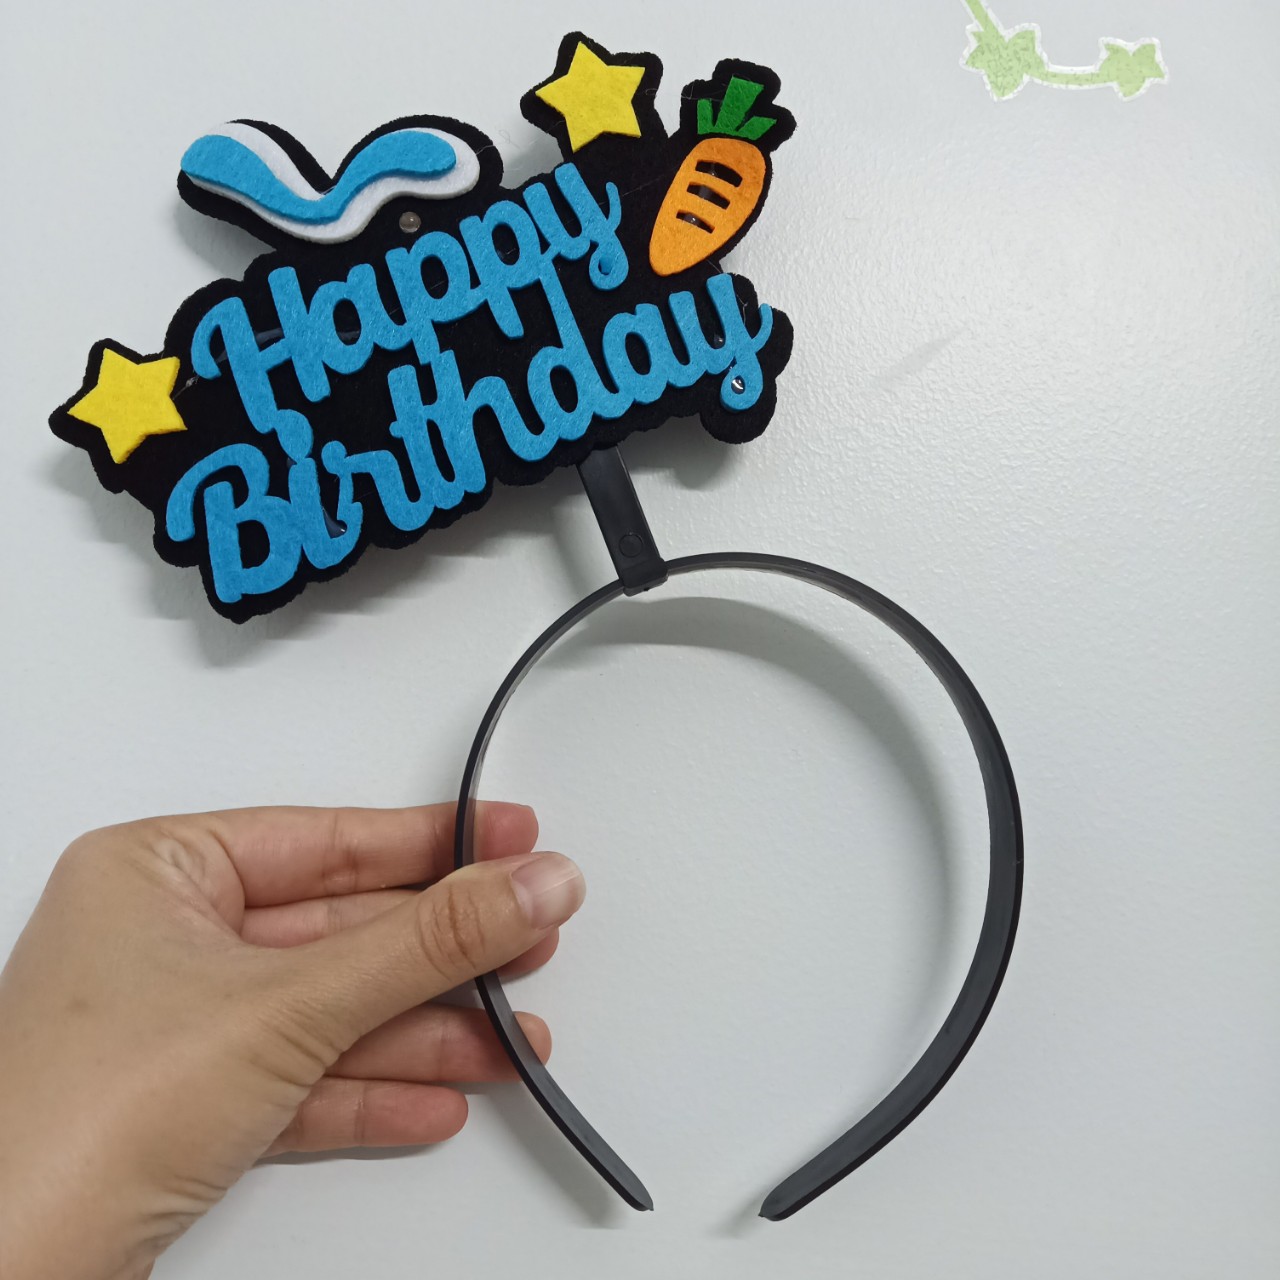 Băng đô cài tóc sinh nhật chữ Happy Birthday vải nỉ có đèn (màu xanh/hồng)